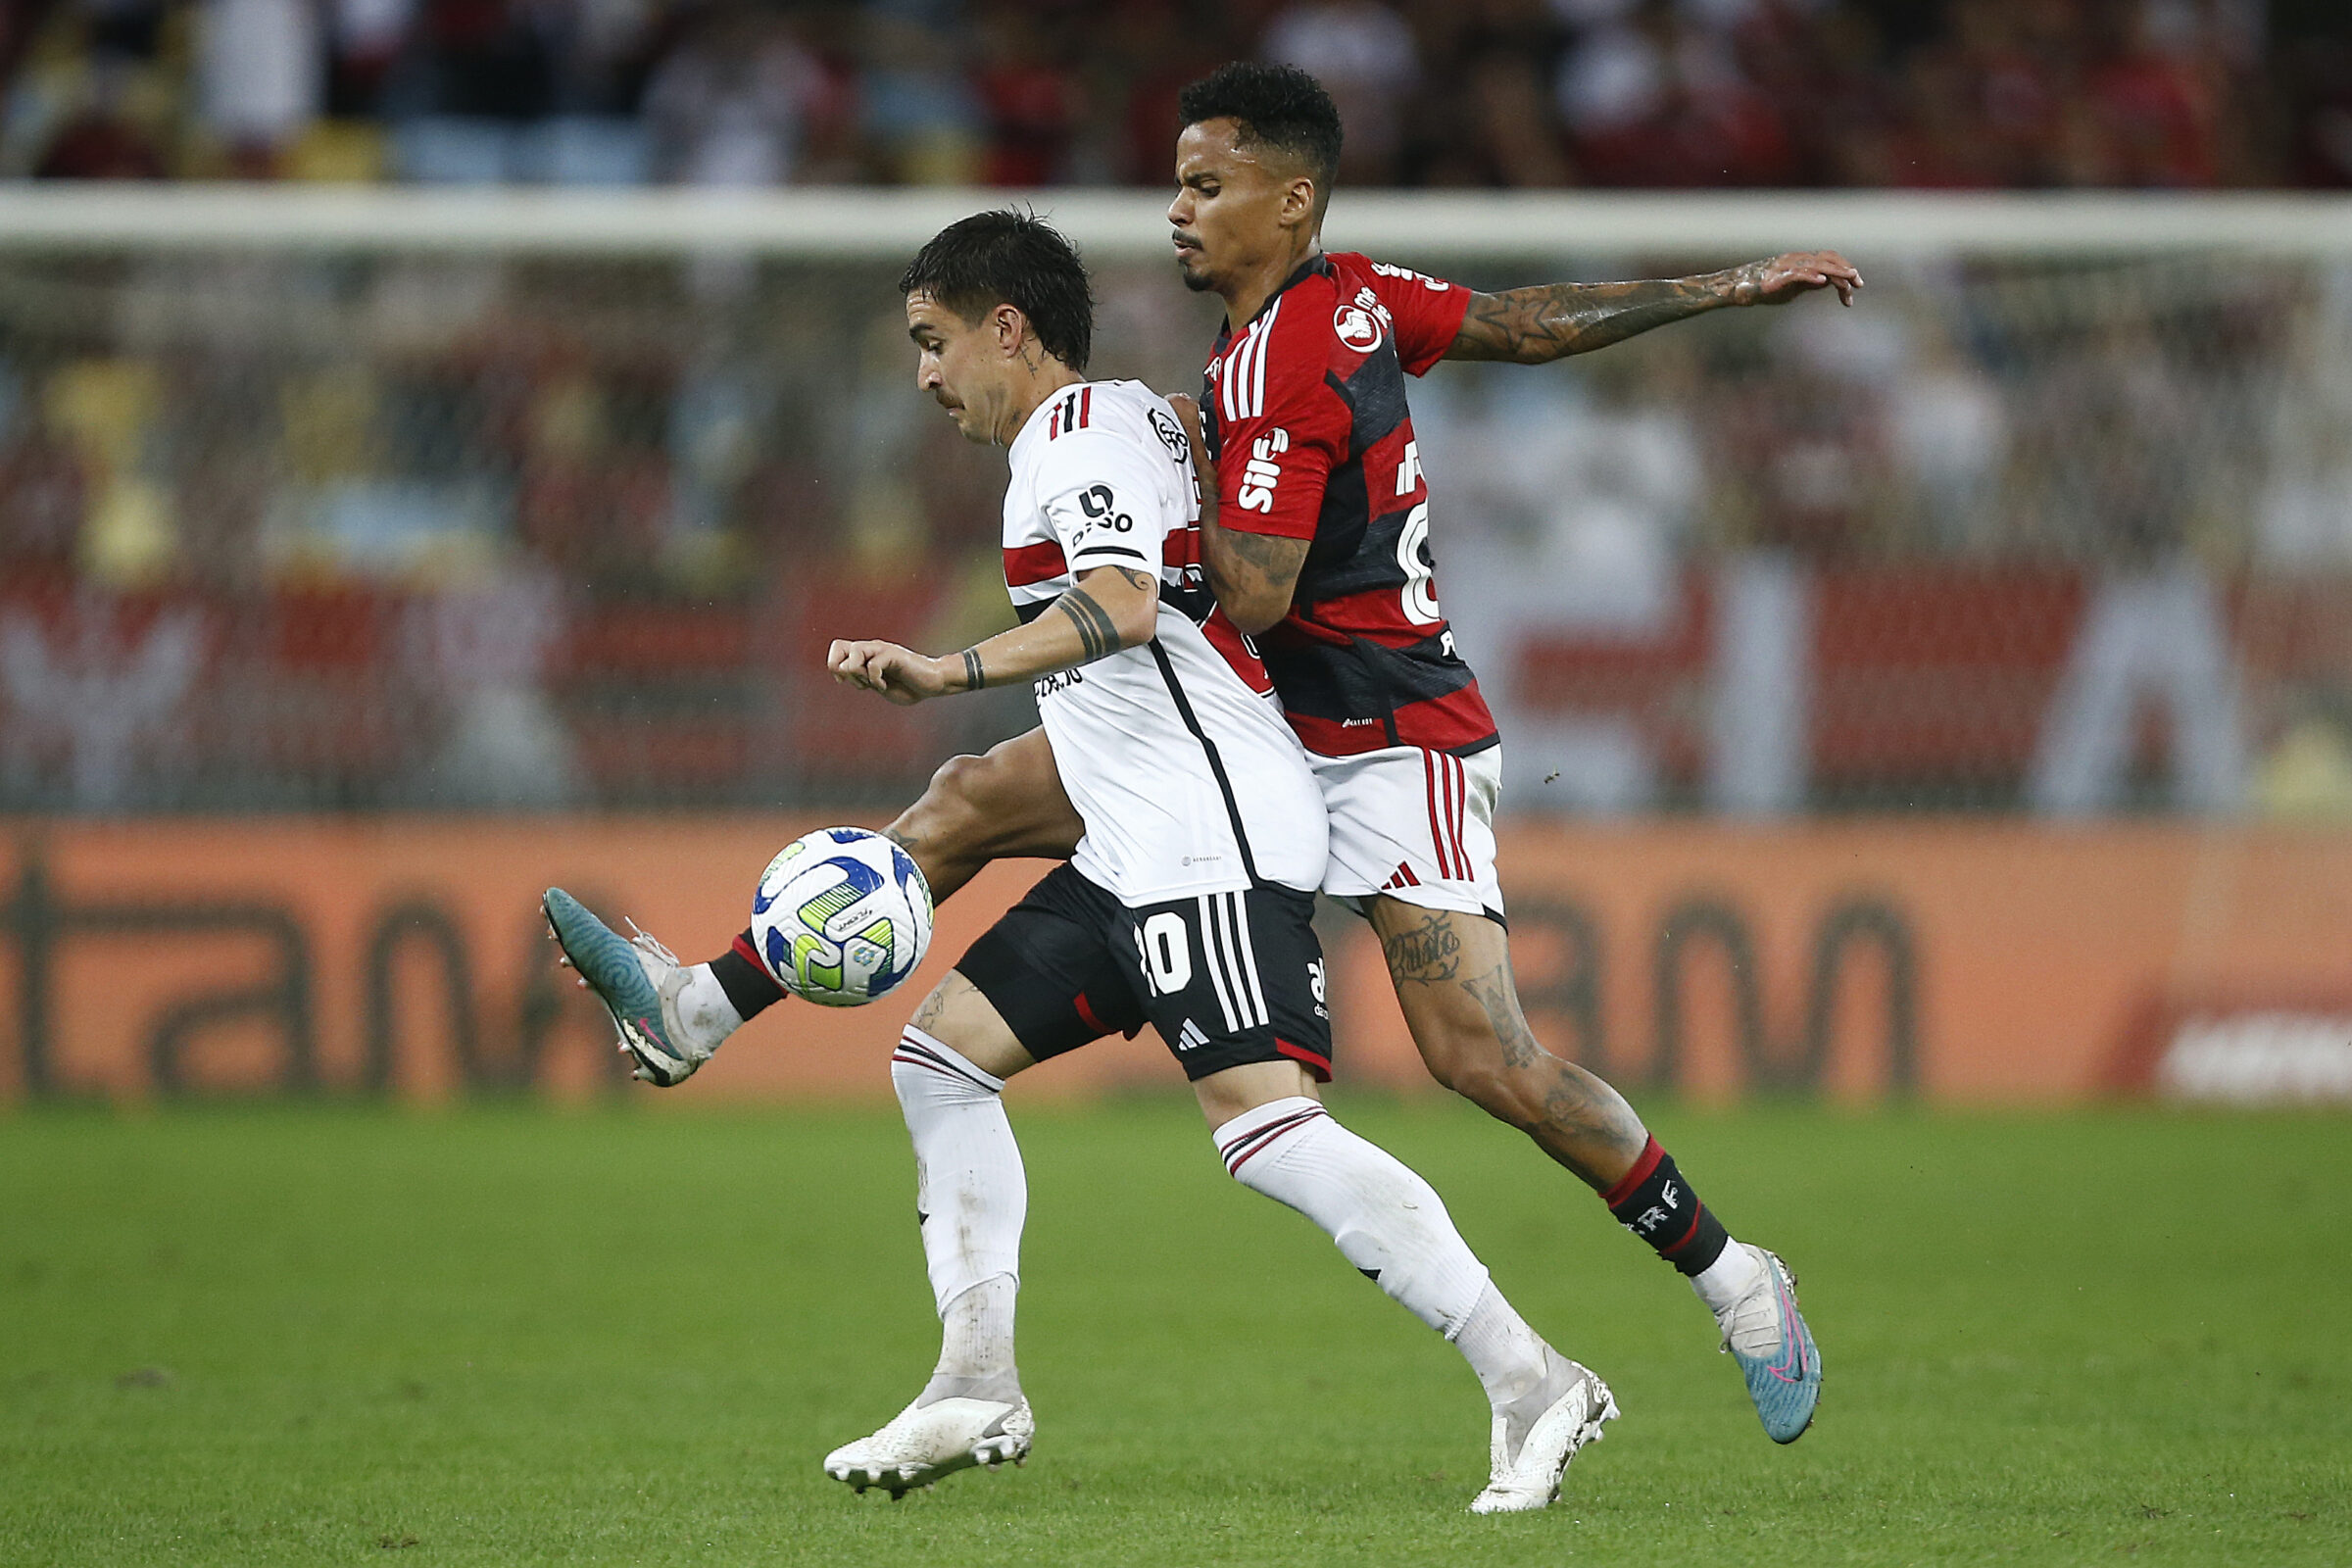 Flamengo 0 x 1 São Paulo  Copa do Brasil: melhores momentos